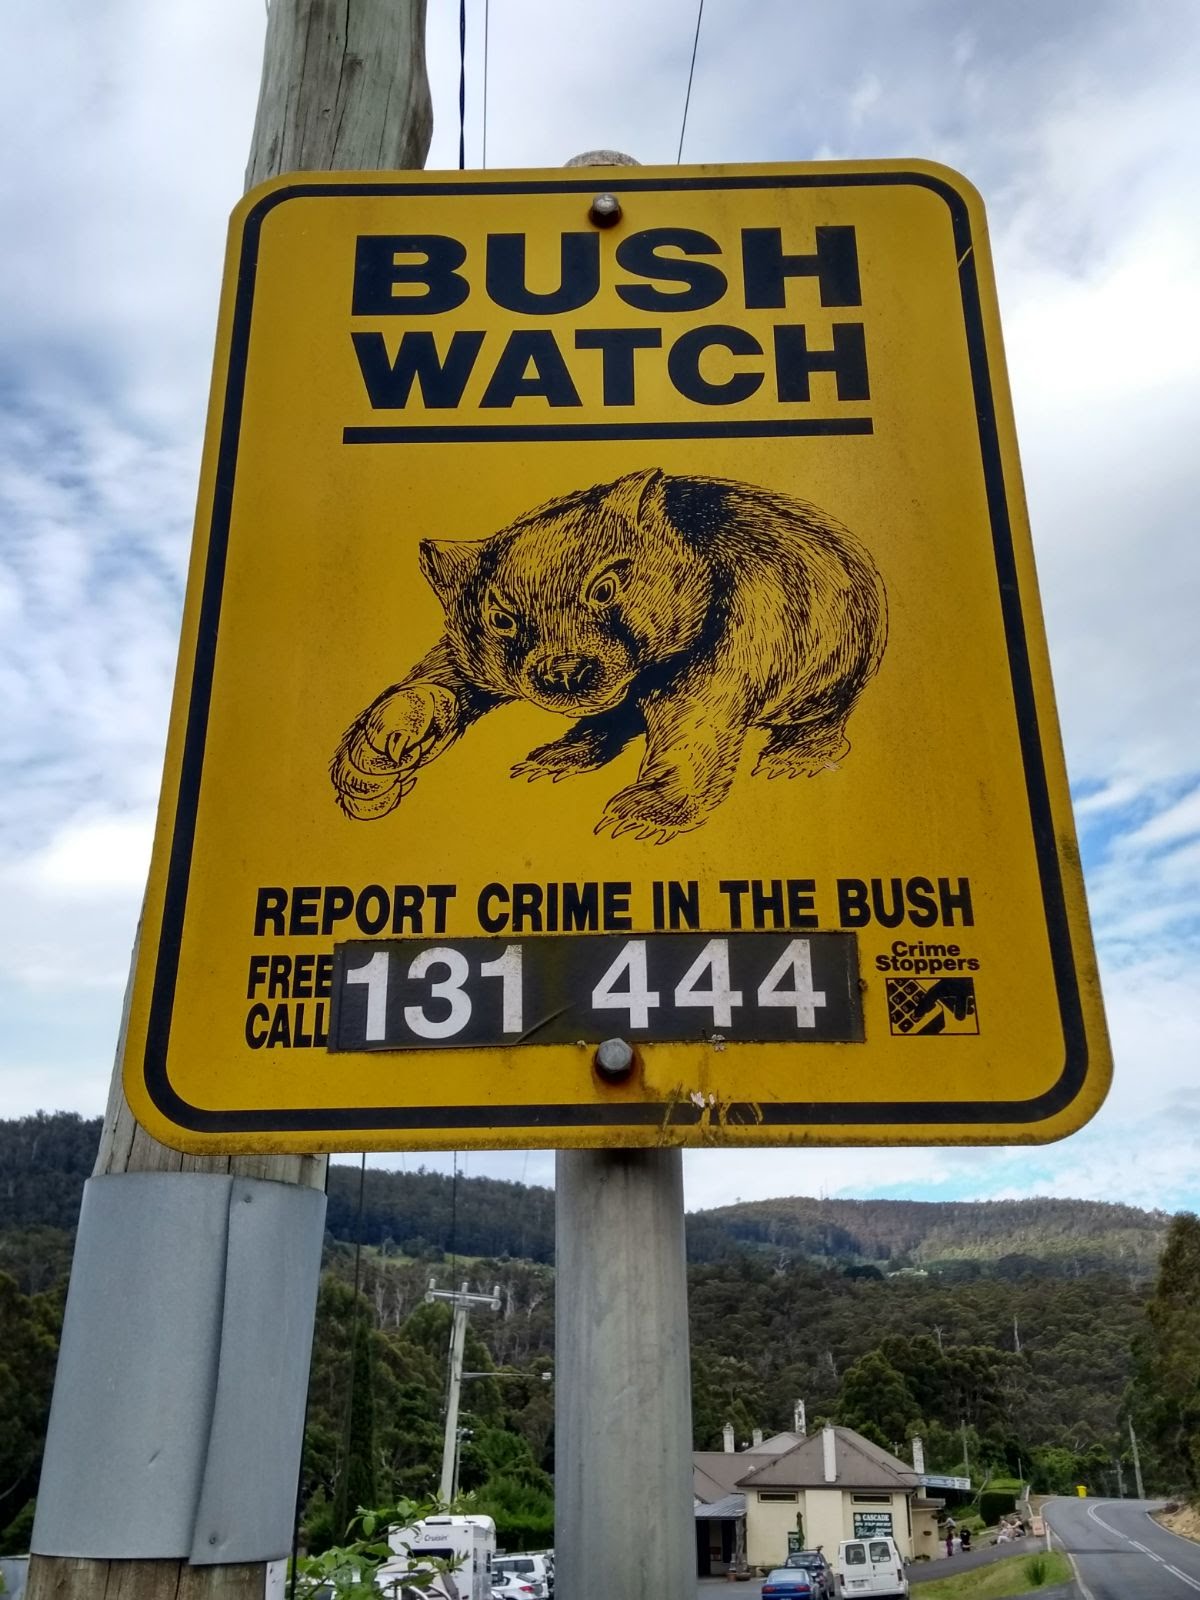 Segnale stradale australiano "Bush Watch" con vombato